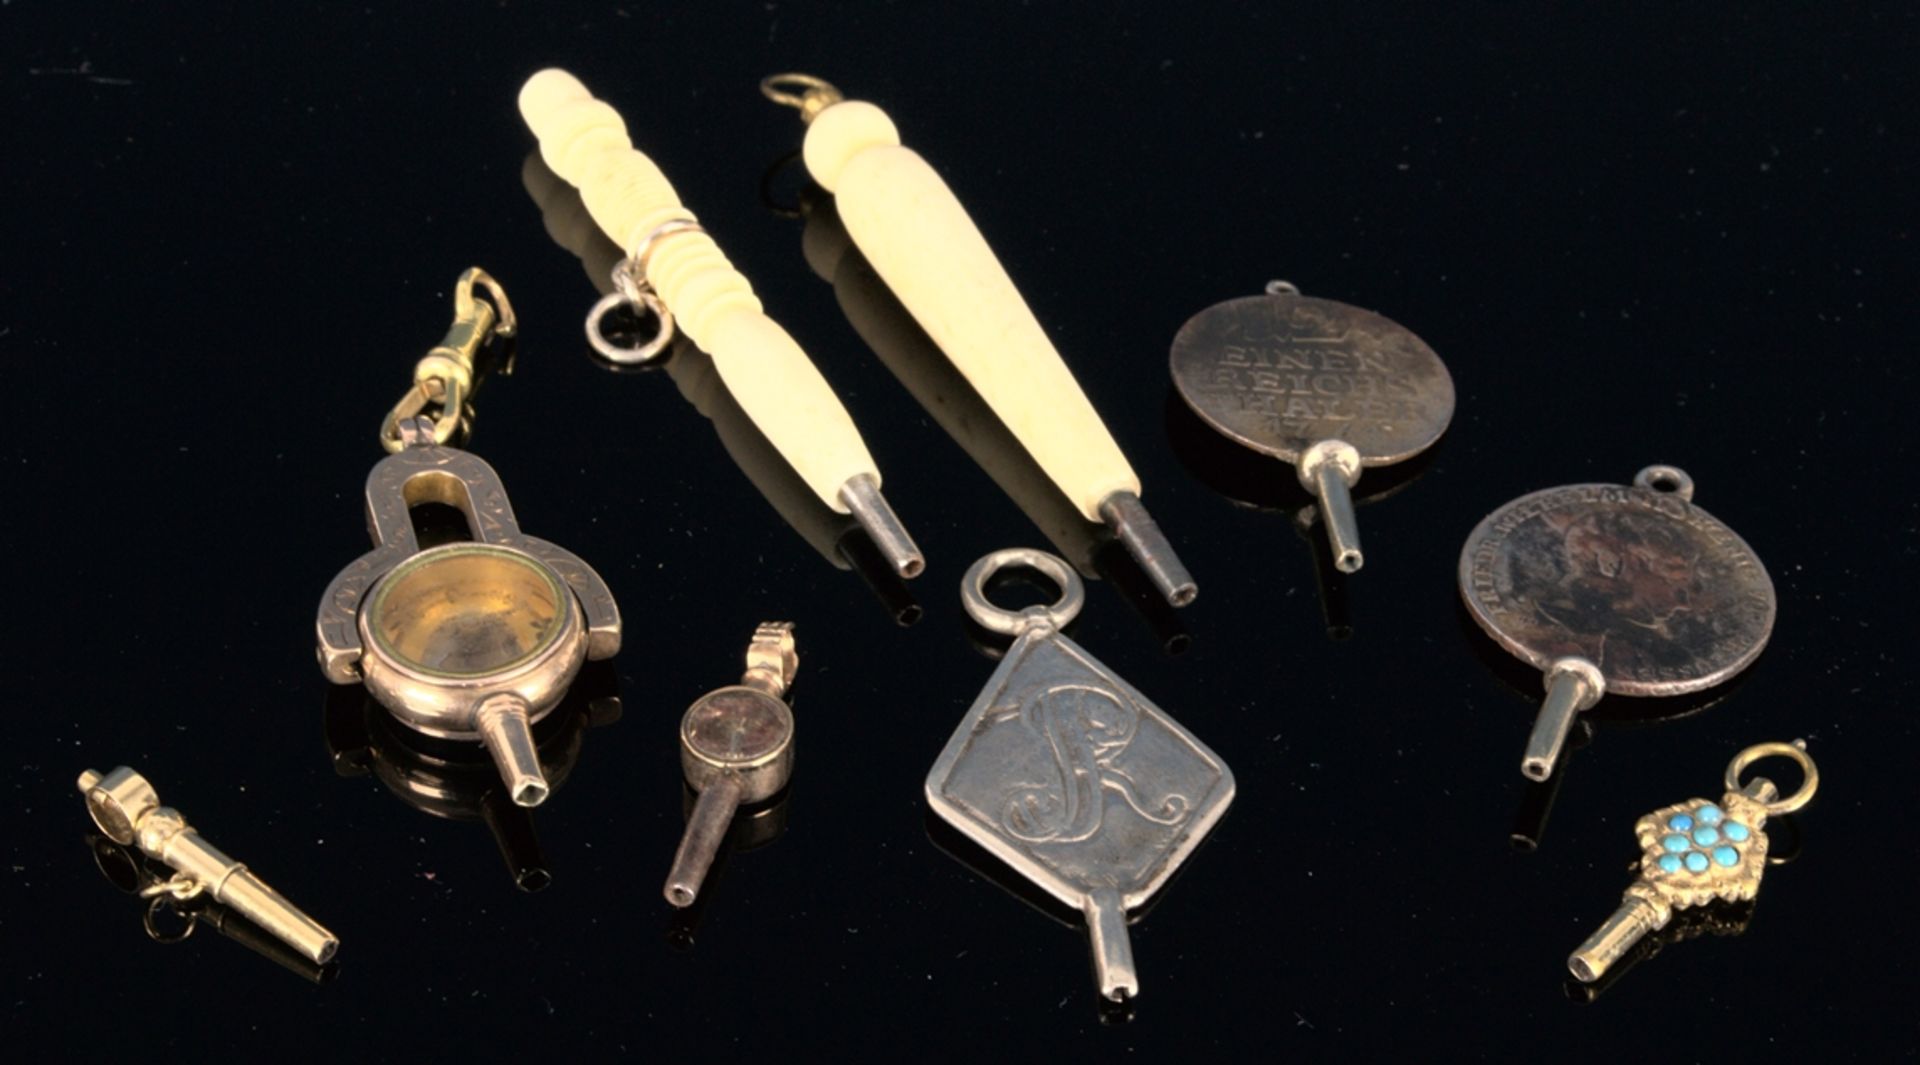 9teilige Sammlung versch. Taschenuhrenschlüssel, überwiegend 19. Jhd. Versch. Alter, Größen, - Image 2 of 18